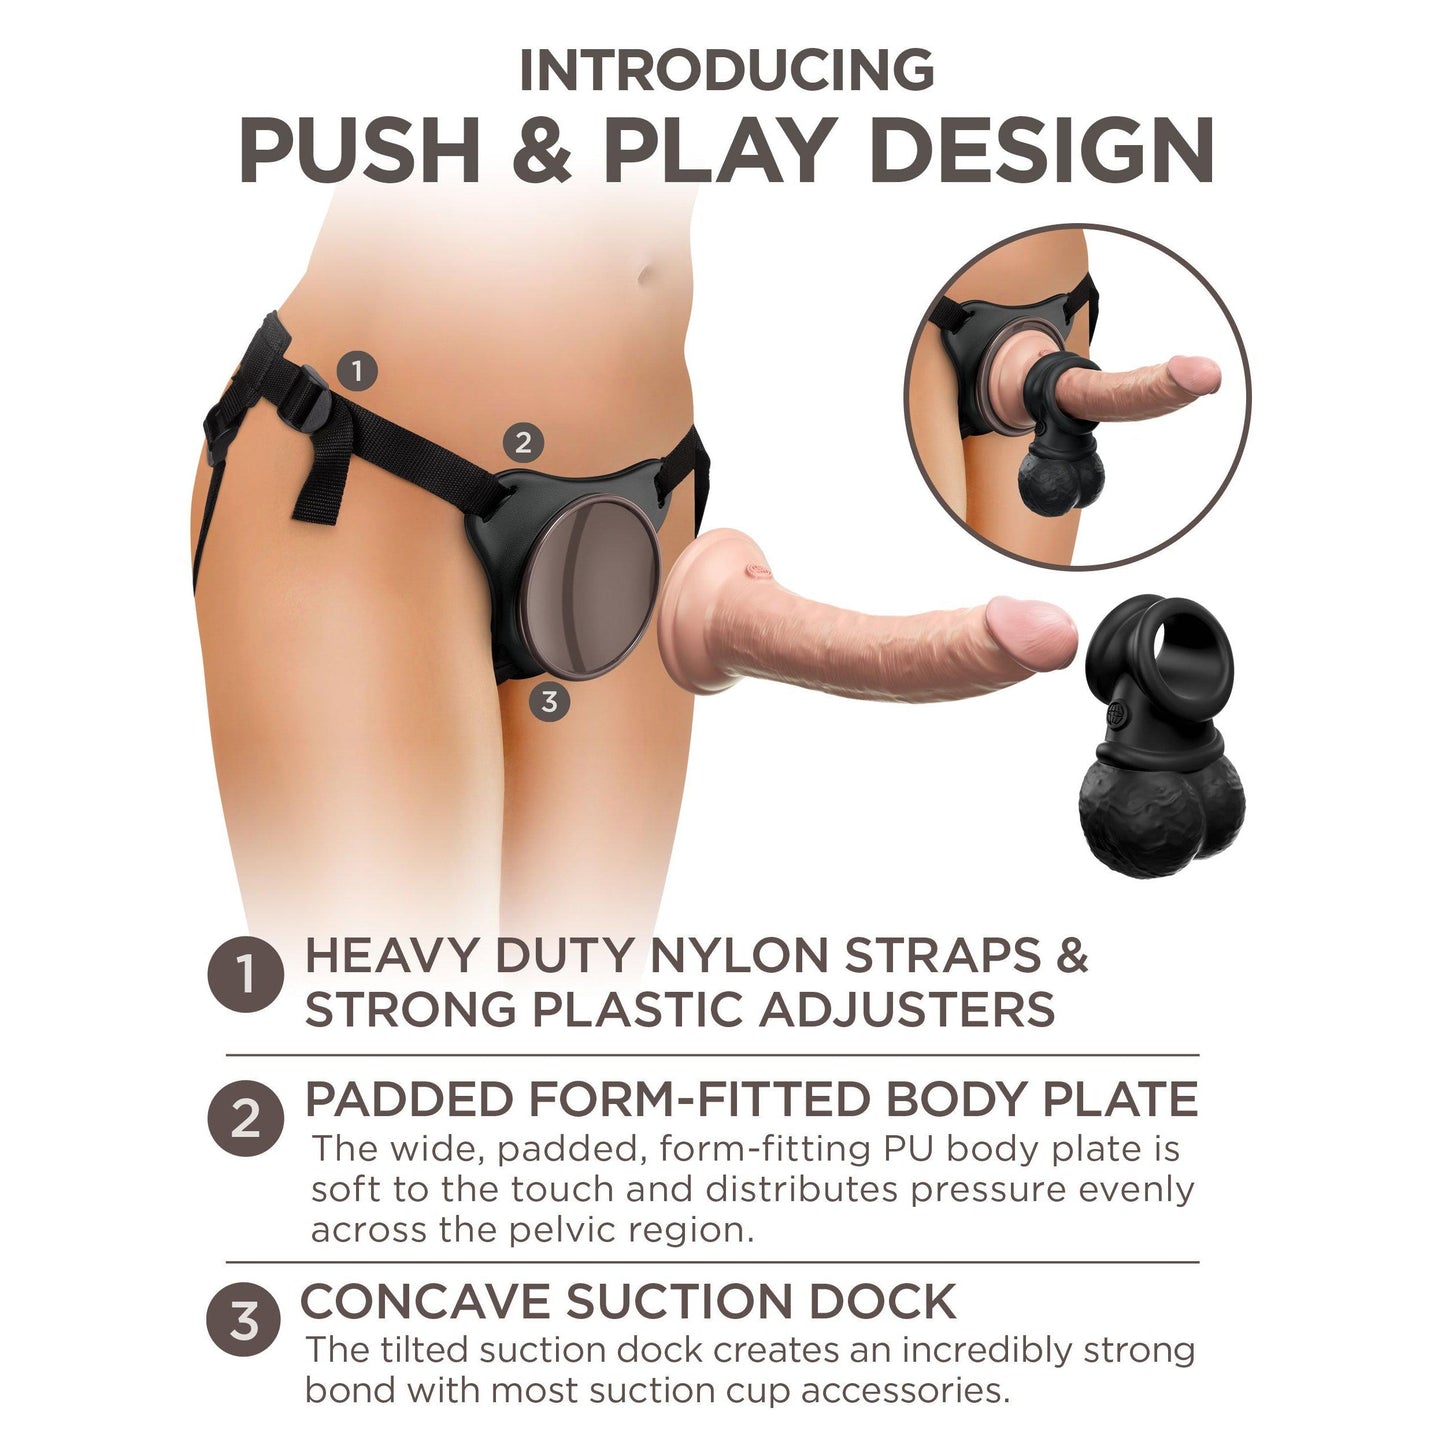 King Cock Elite Ultimate Vibrating Silicone Body  Dock Kit